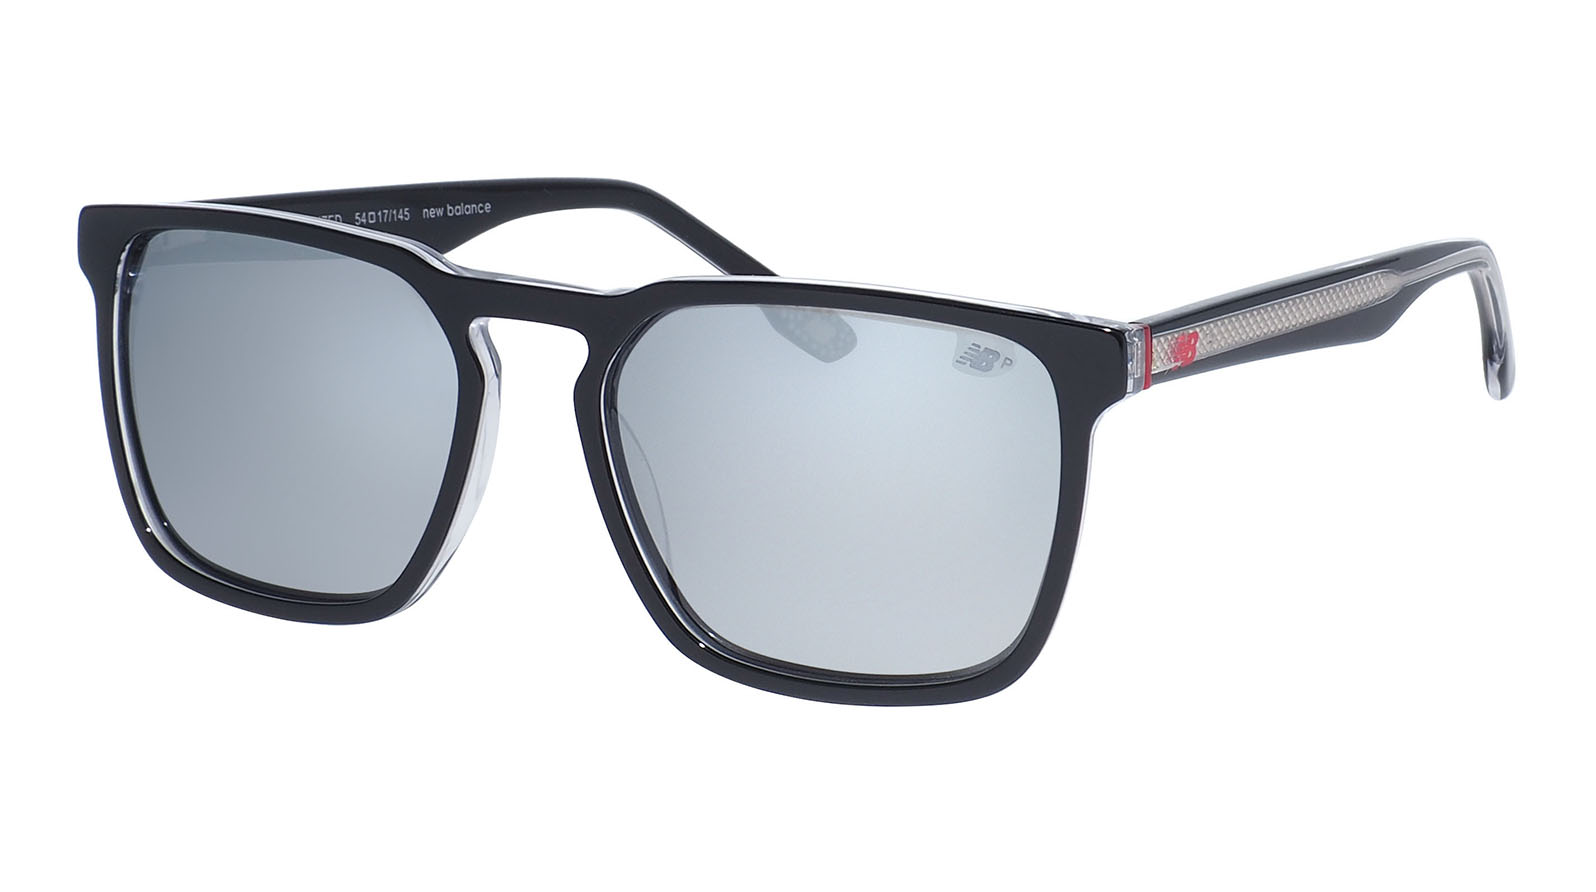 New Balance 6069 1 grand voyage солнцезащитные очки для водителя с поляризацией